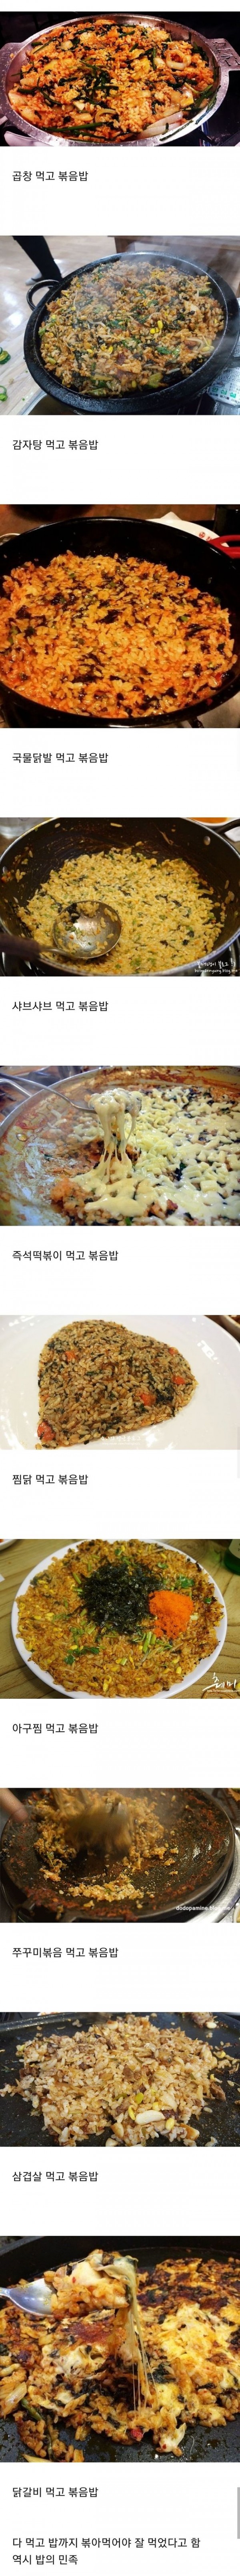 한국인의 흔한 후식